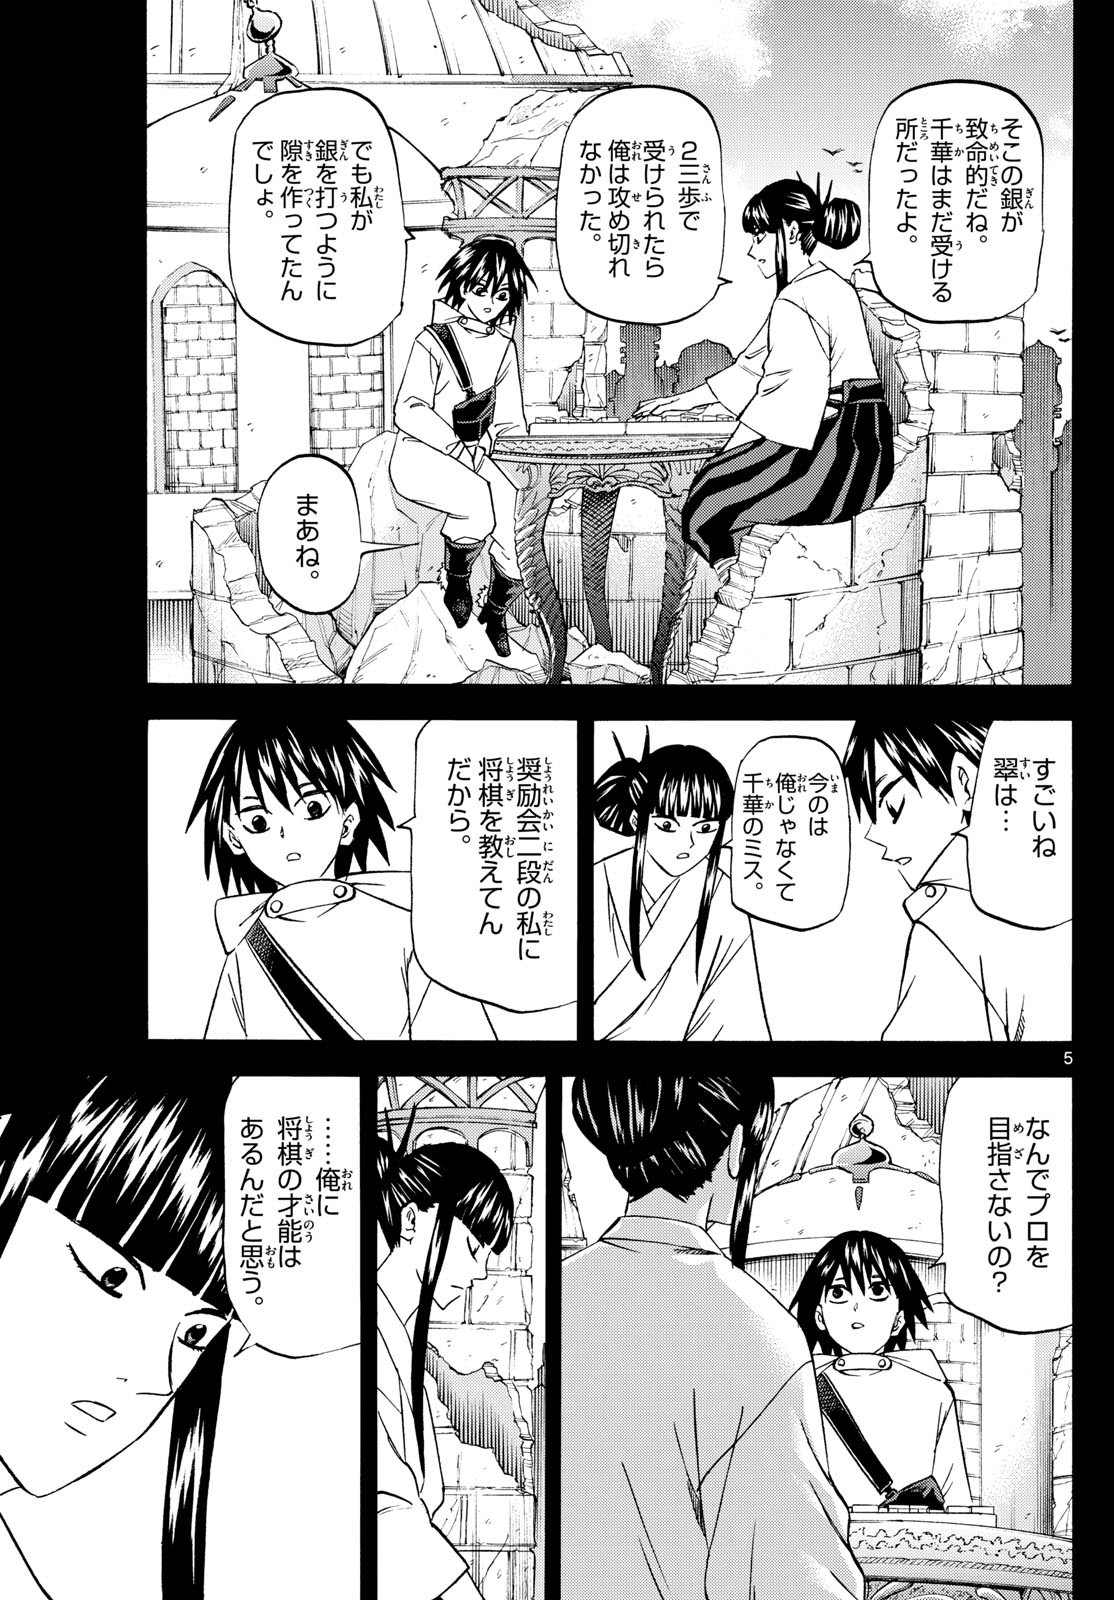 Ryu-to-Ichigo - Chapter 194 - Page 5